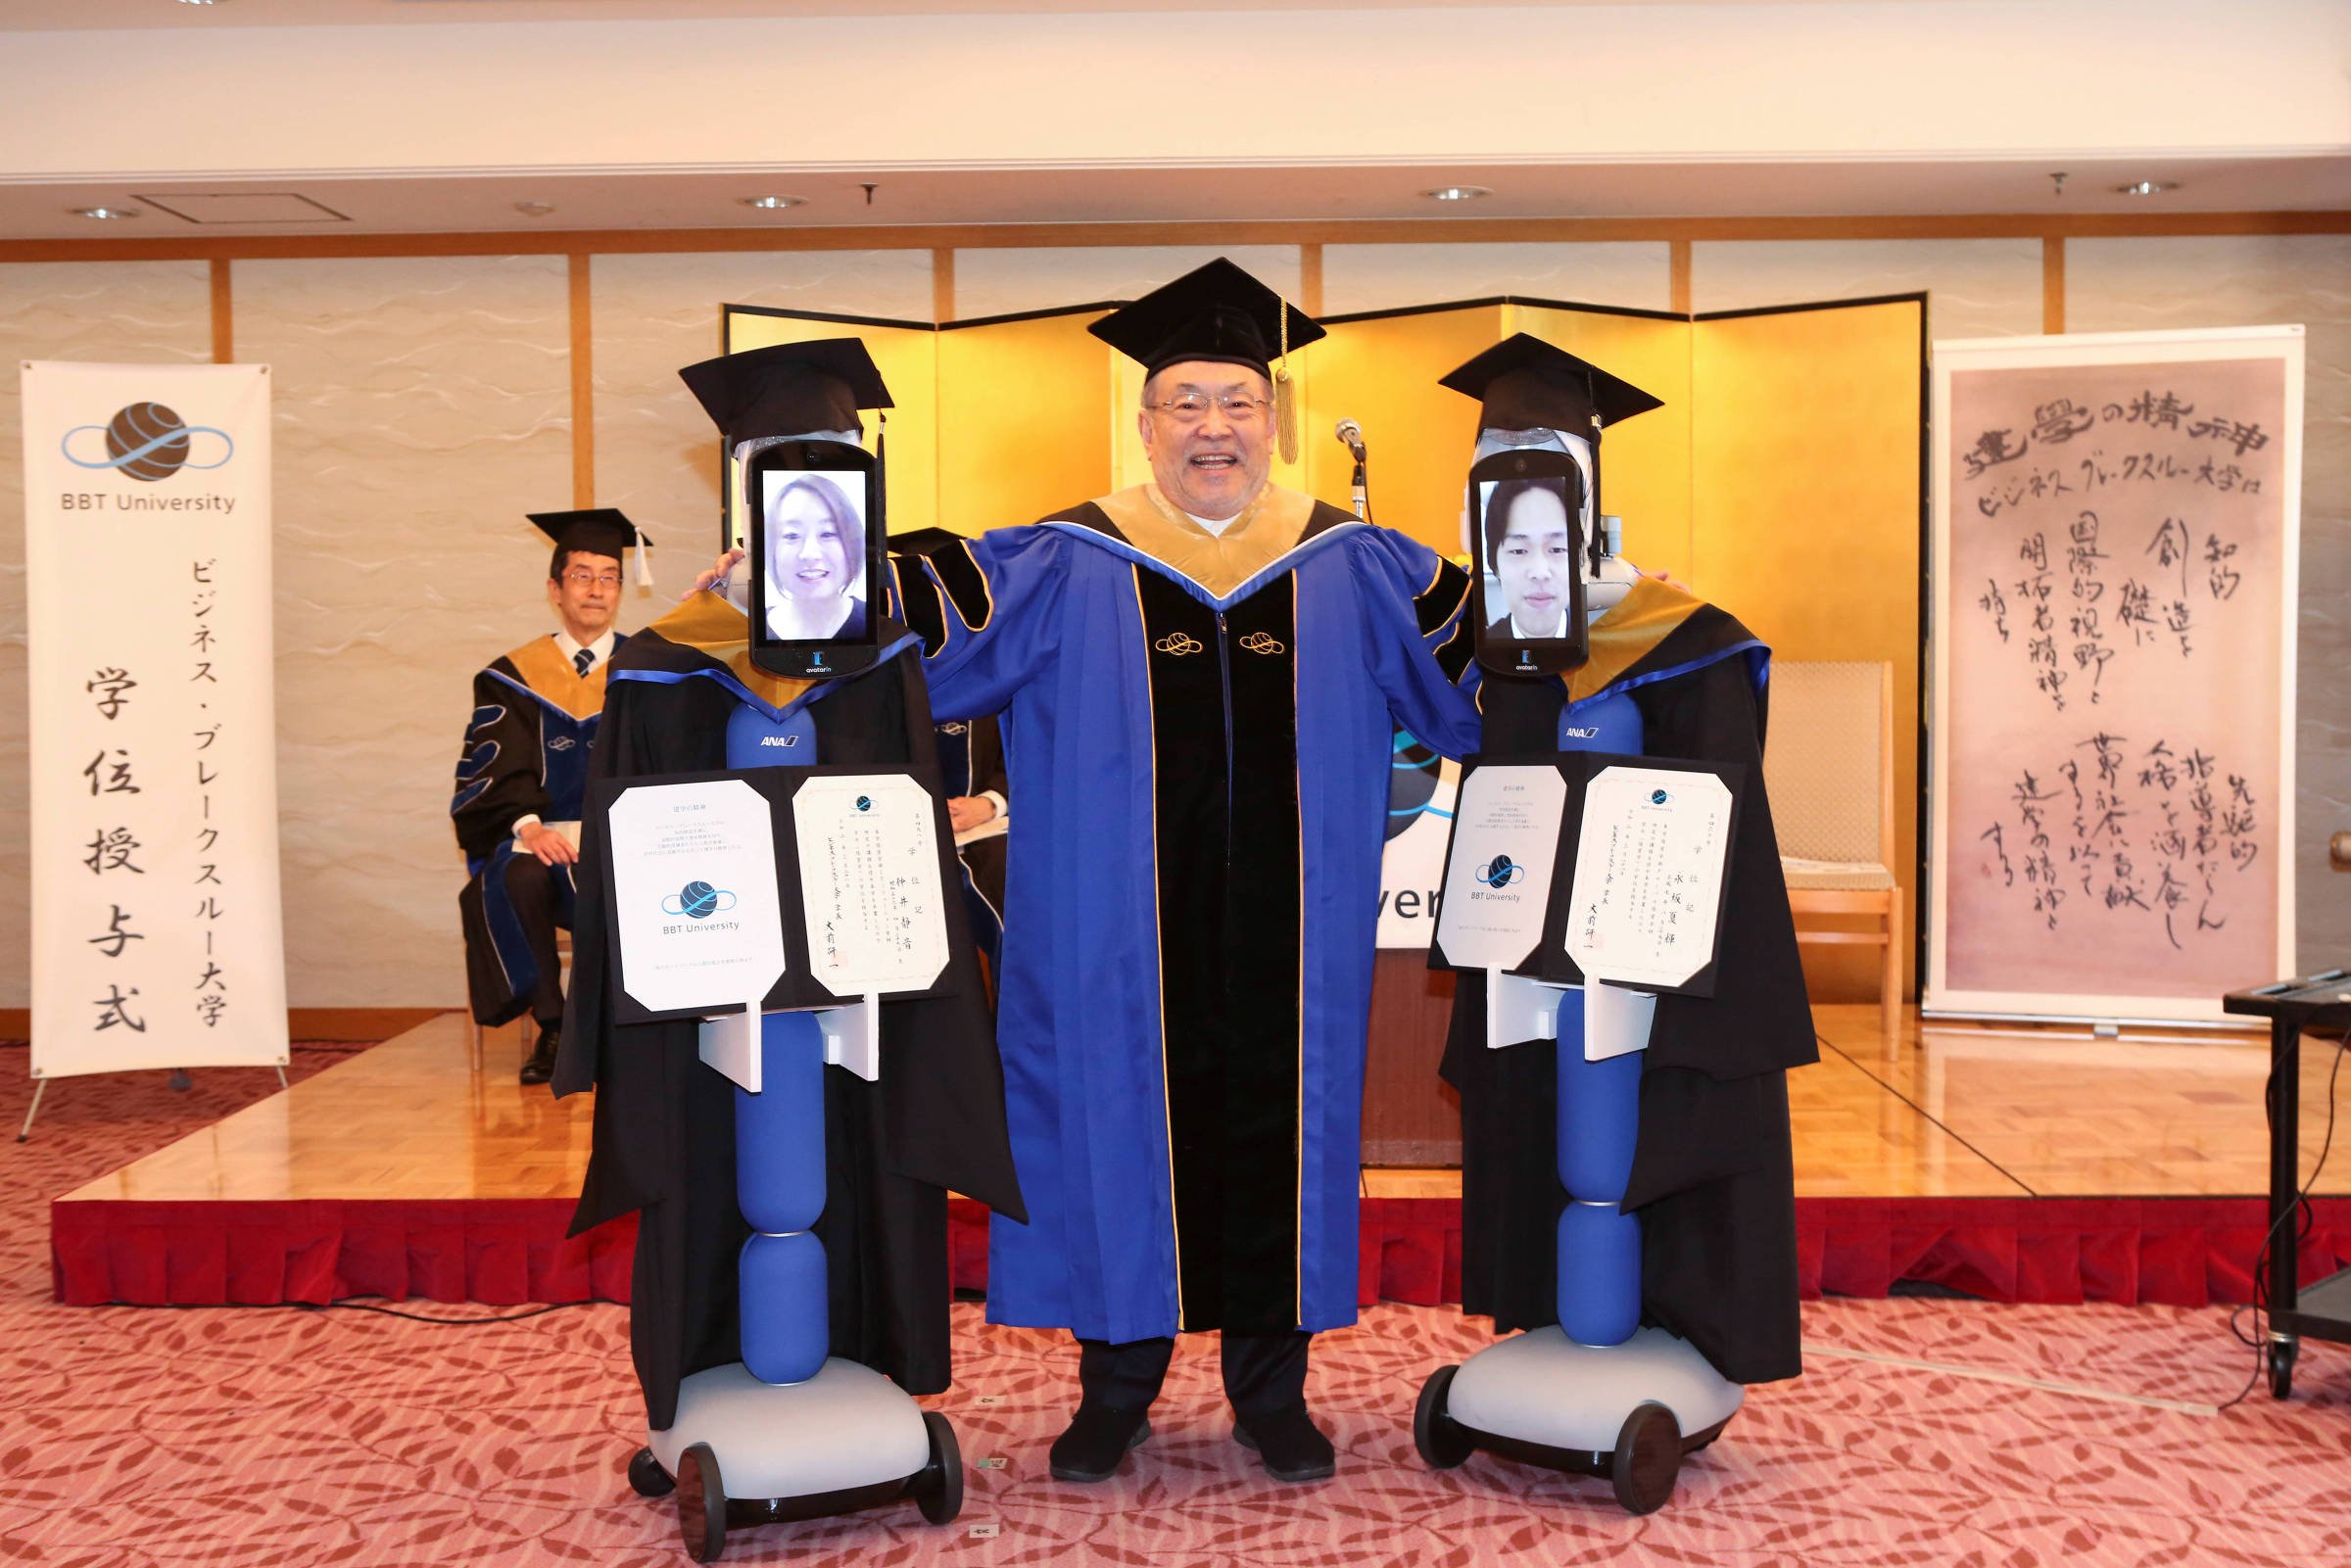 Kenichi Ohmae, presidente da instituição, entrega certificados a alunos representados por robôs